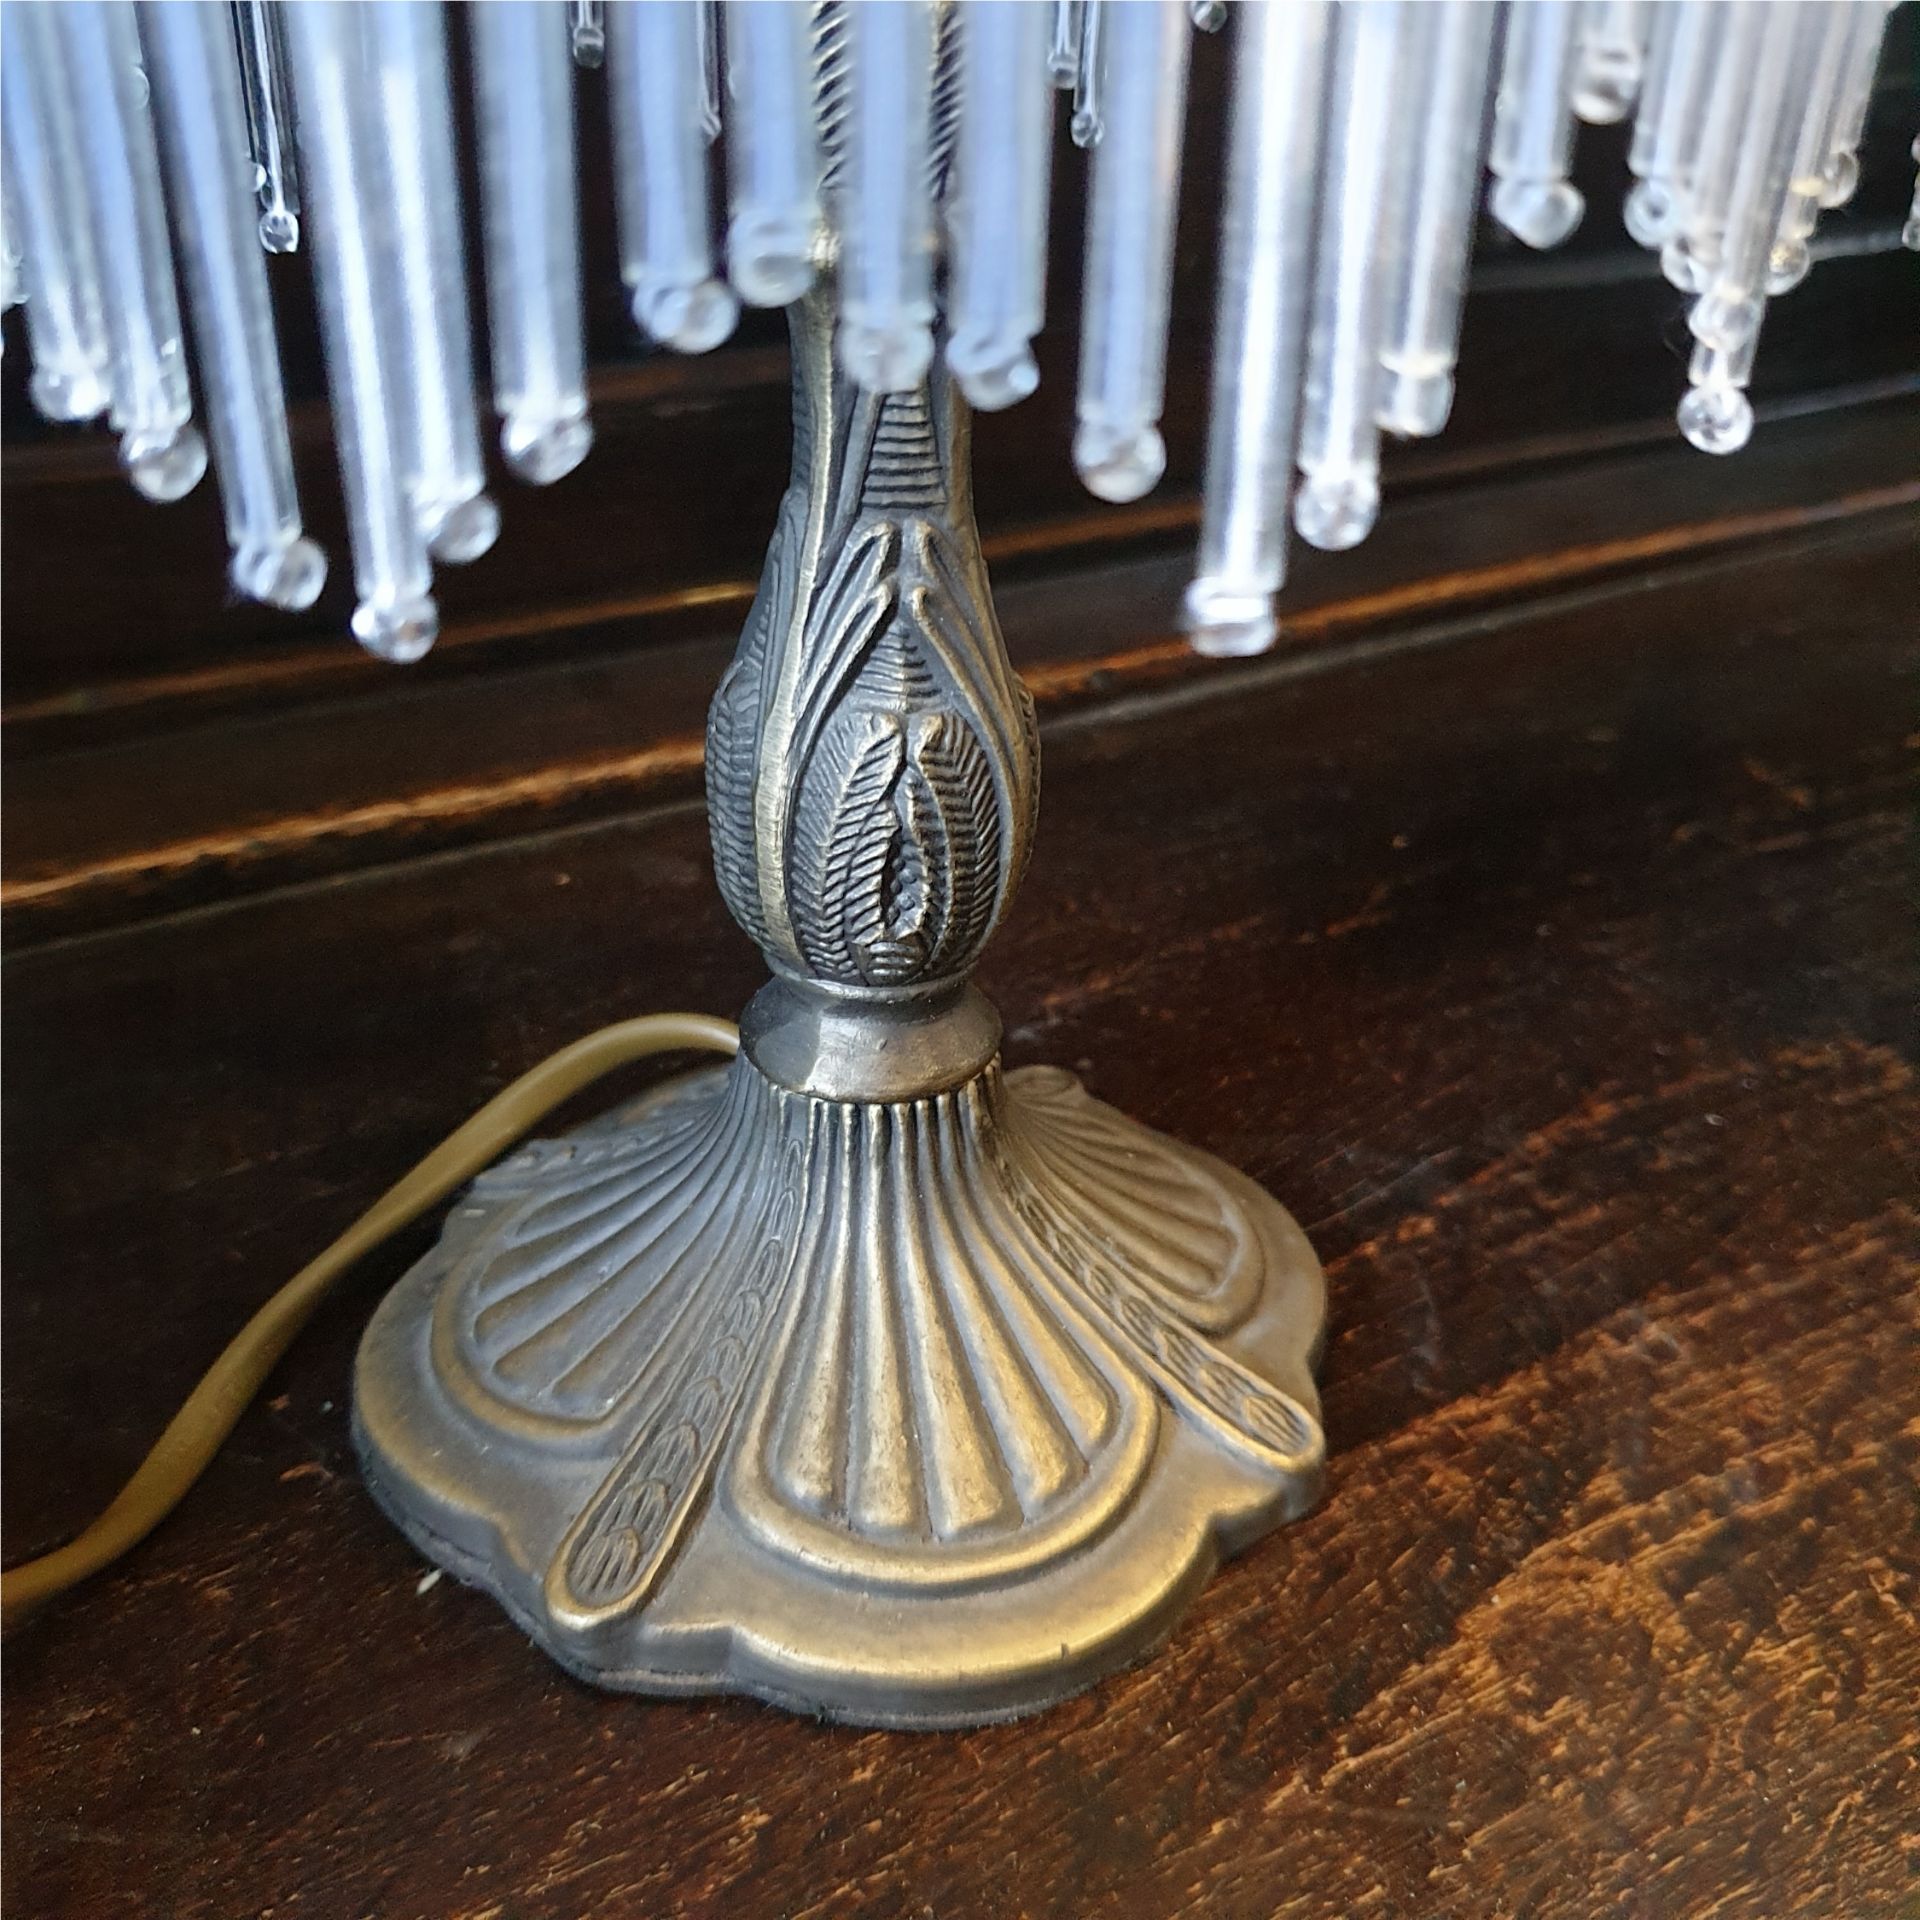 2 x Art Nouveau Style Table Lamps - Image 2 of 2